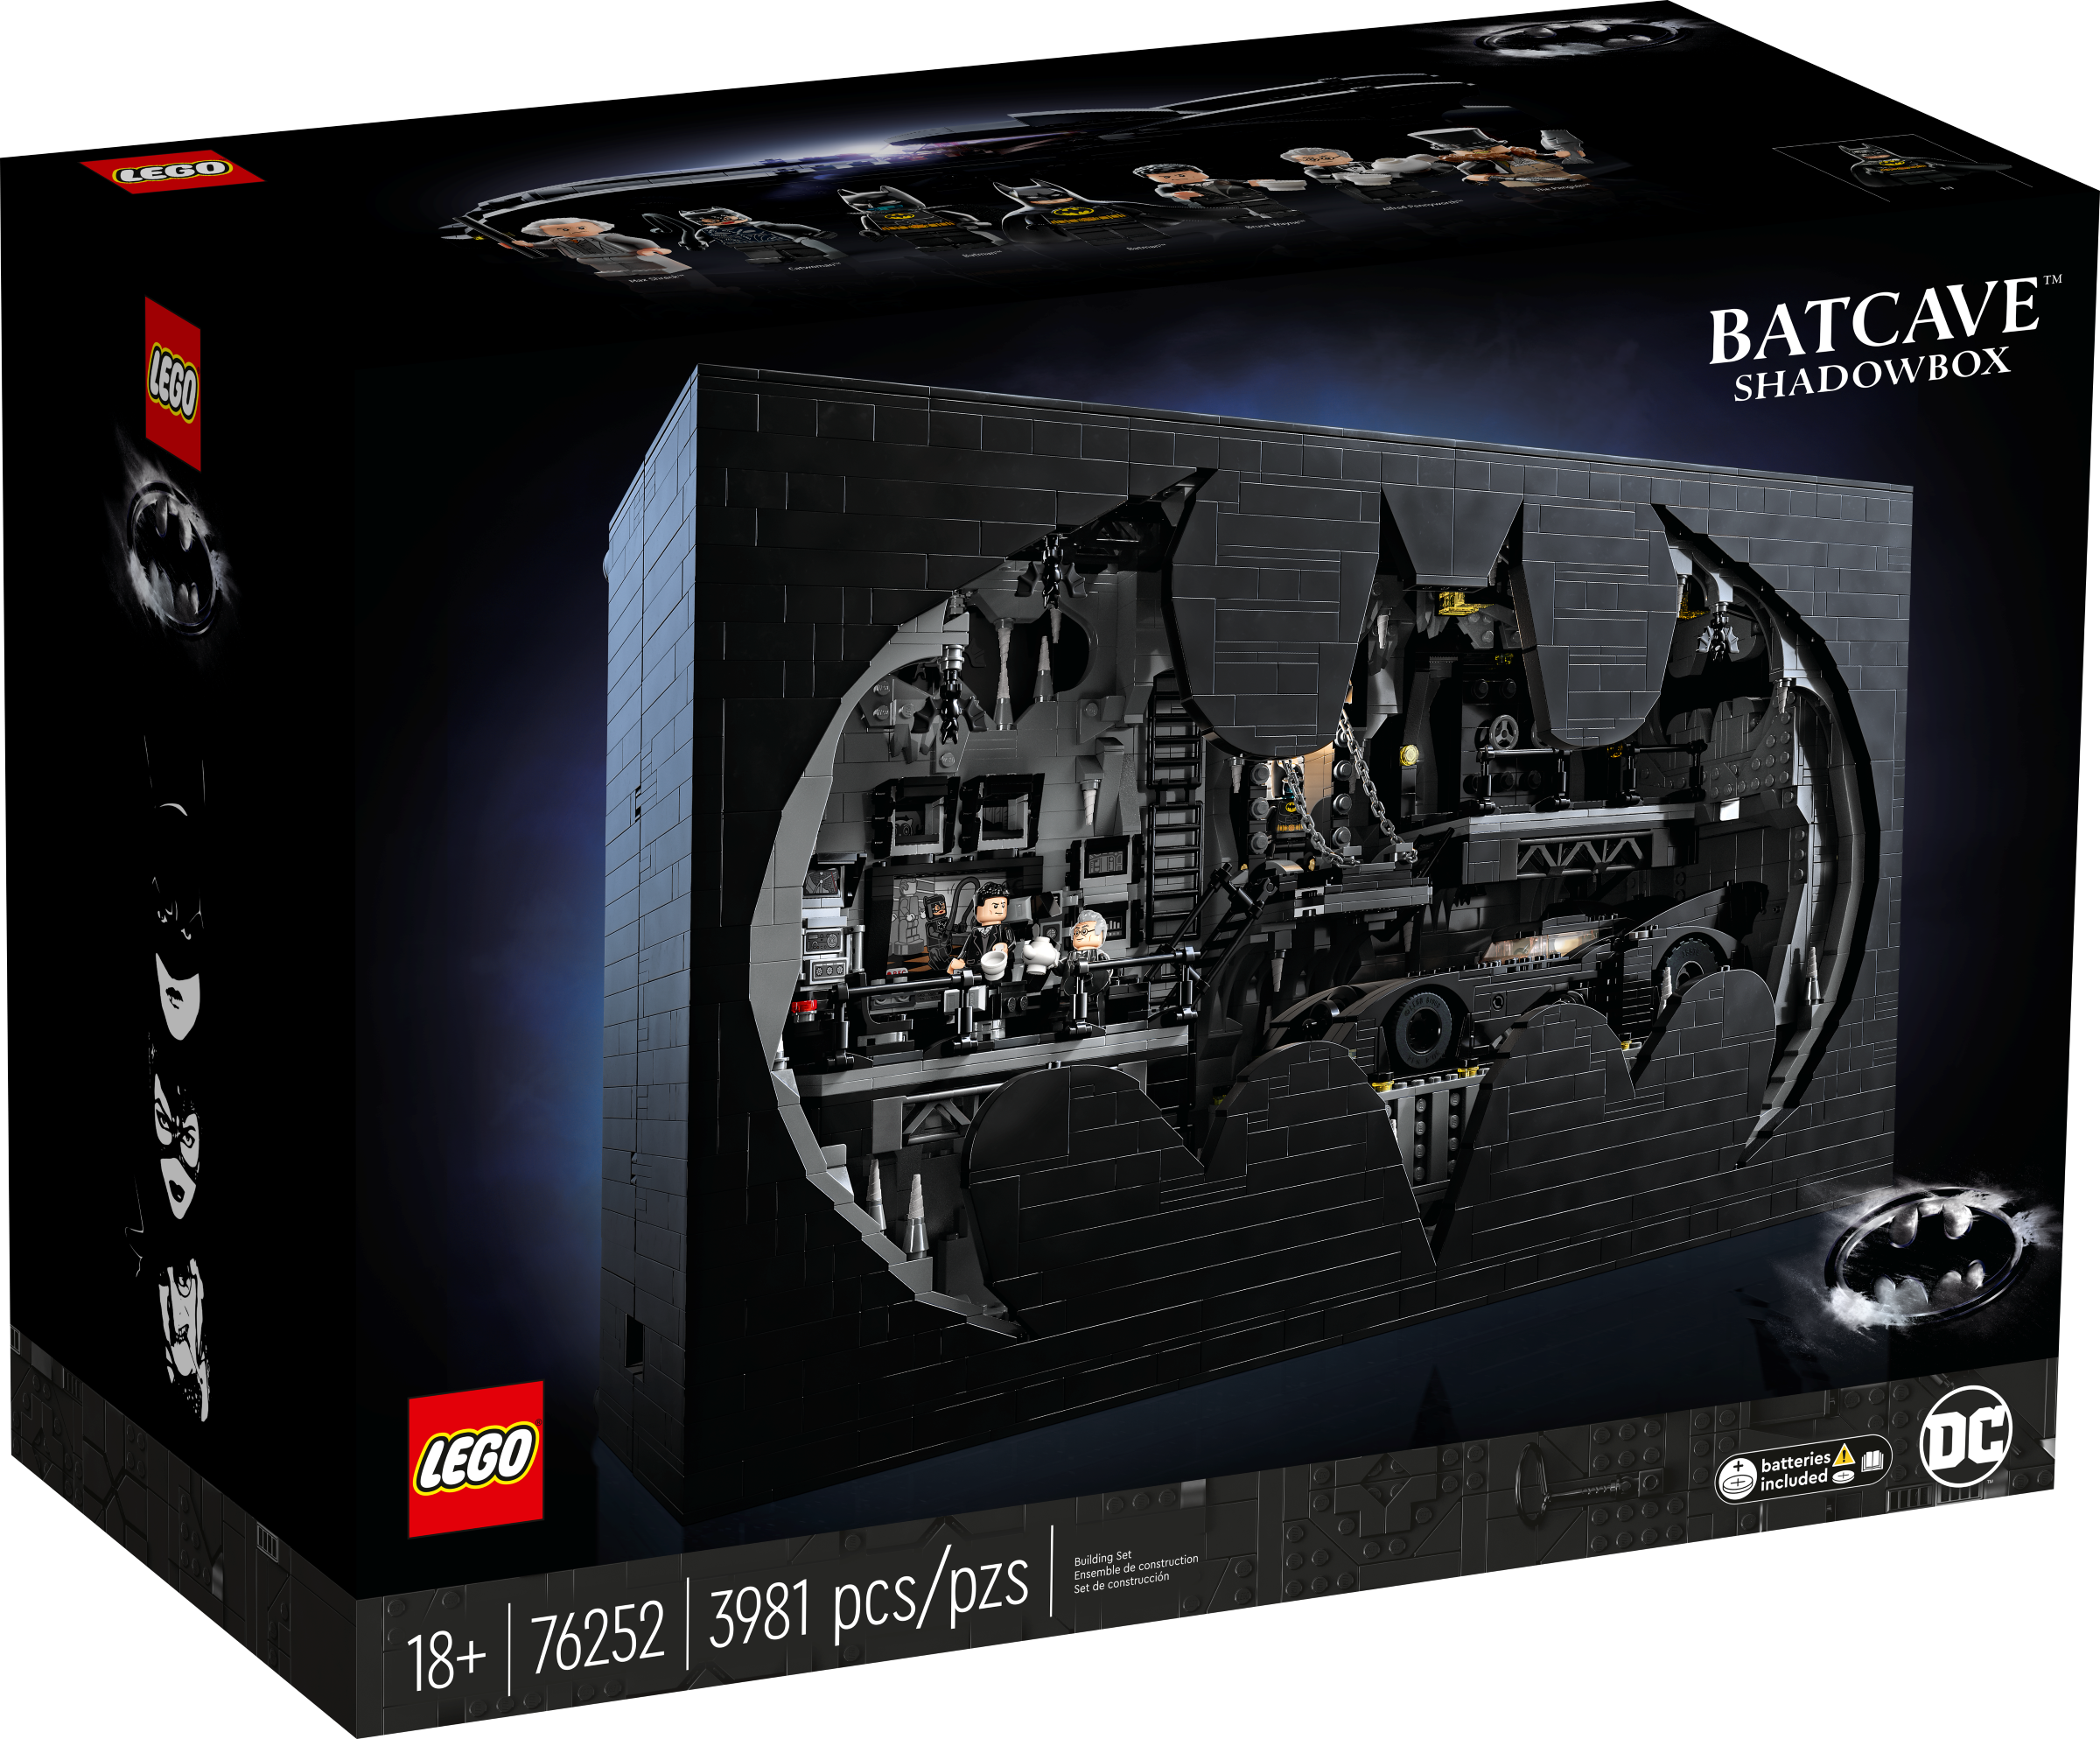 LEGO Batman Bathöhle Schaukasten (76252) - im GOLDSTIEN.SHOP verfügbar mit Gratisversand ab Schweizer Lager! (5702017419695)